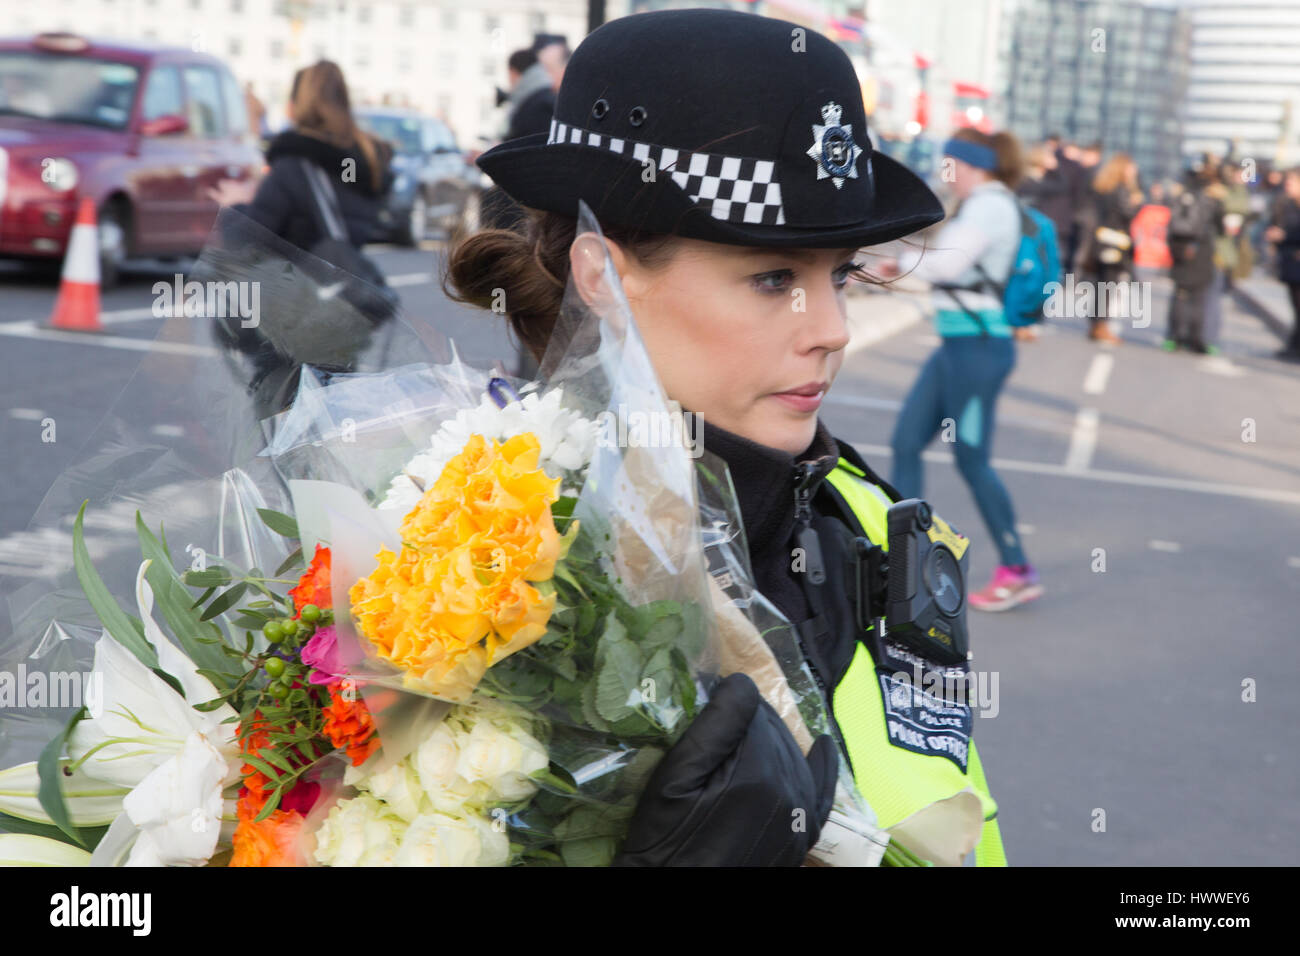 Londra 23 marzo 2017 una poliziotta stabilisce omaggio floreale al di fuori del palazzo di Westminster a seguito ieri in un attacco in cui un funzionario di polizia è stato ucciso. Foto Stock